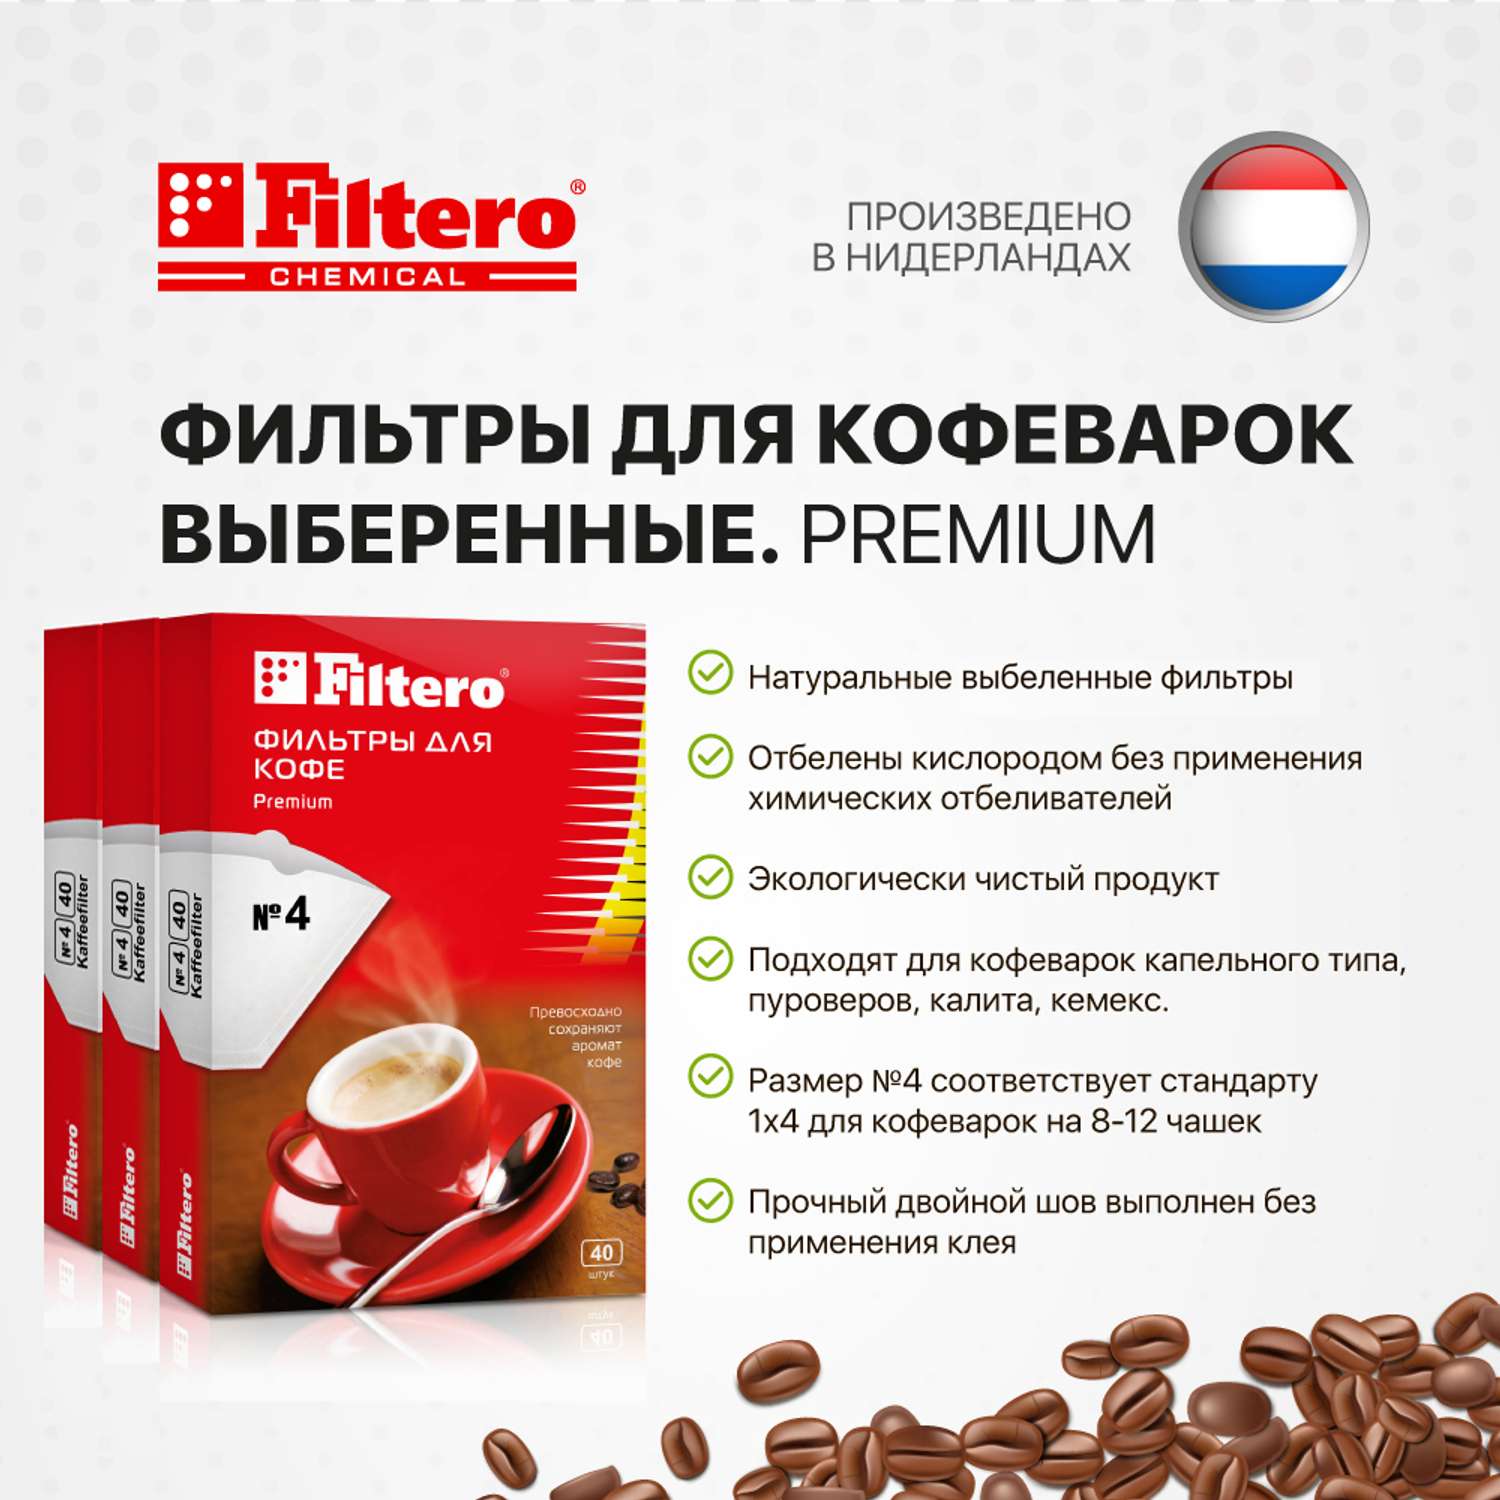 Комплект фильтров Filtero для кофеварки №4/120шт белые Premium - фото 3